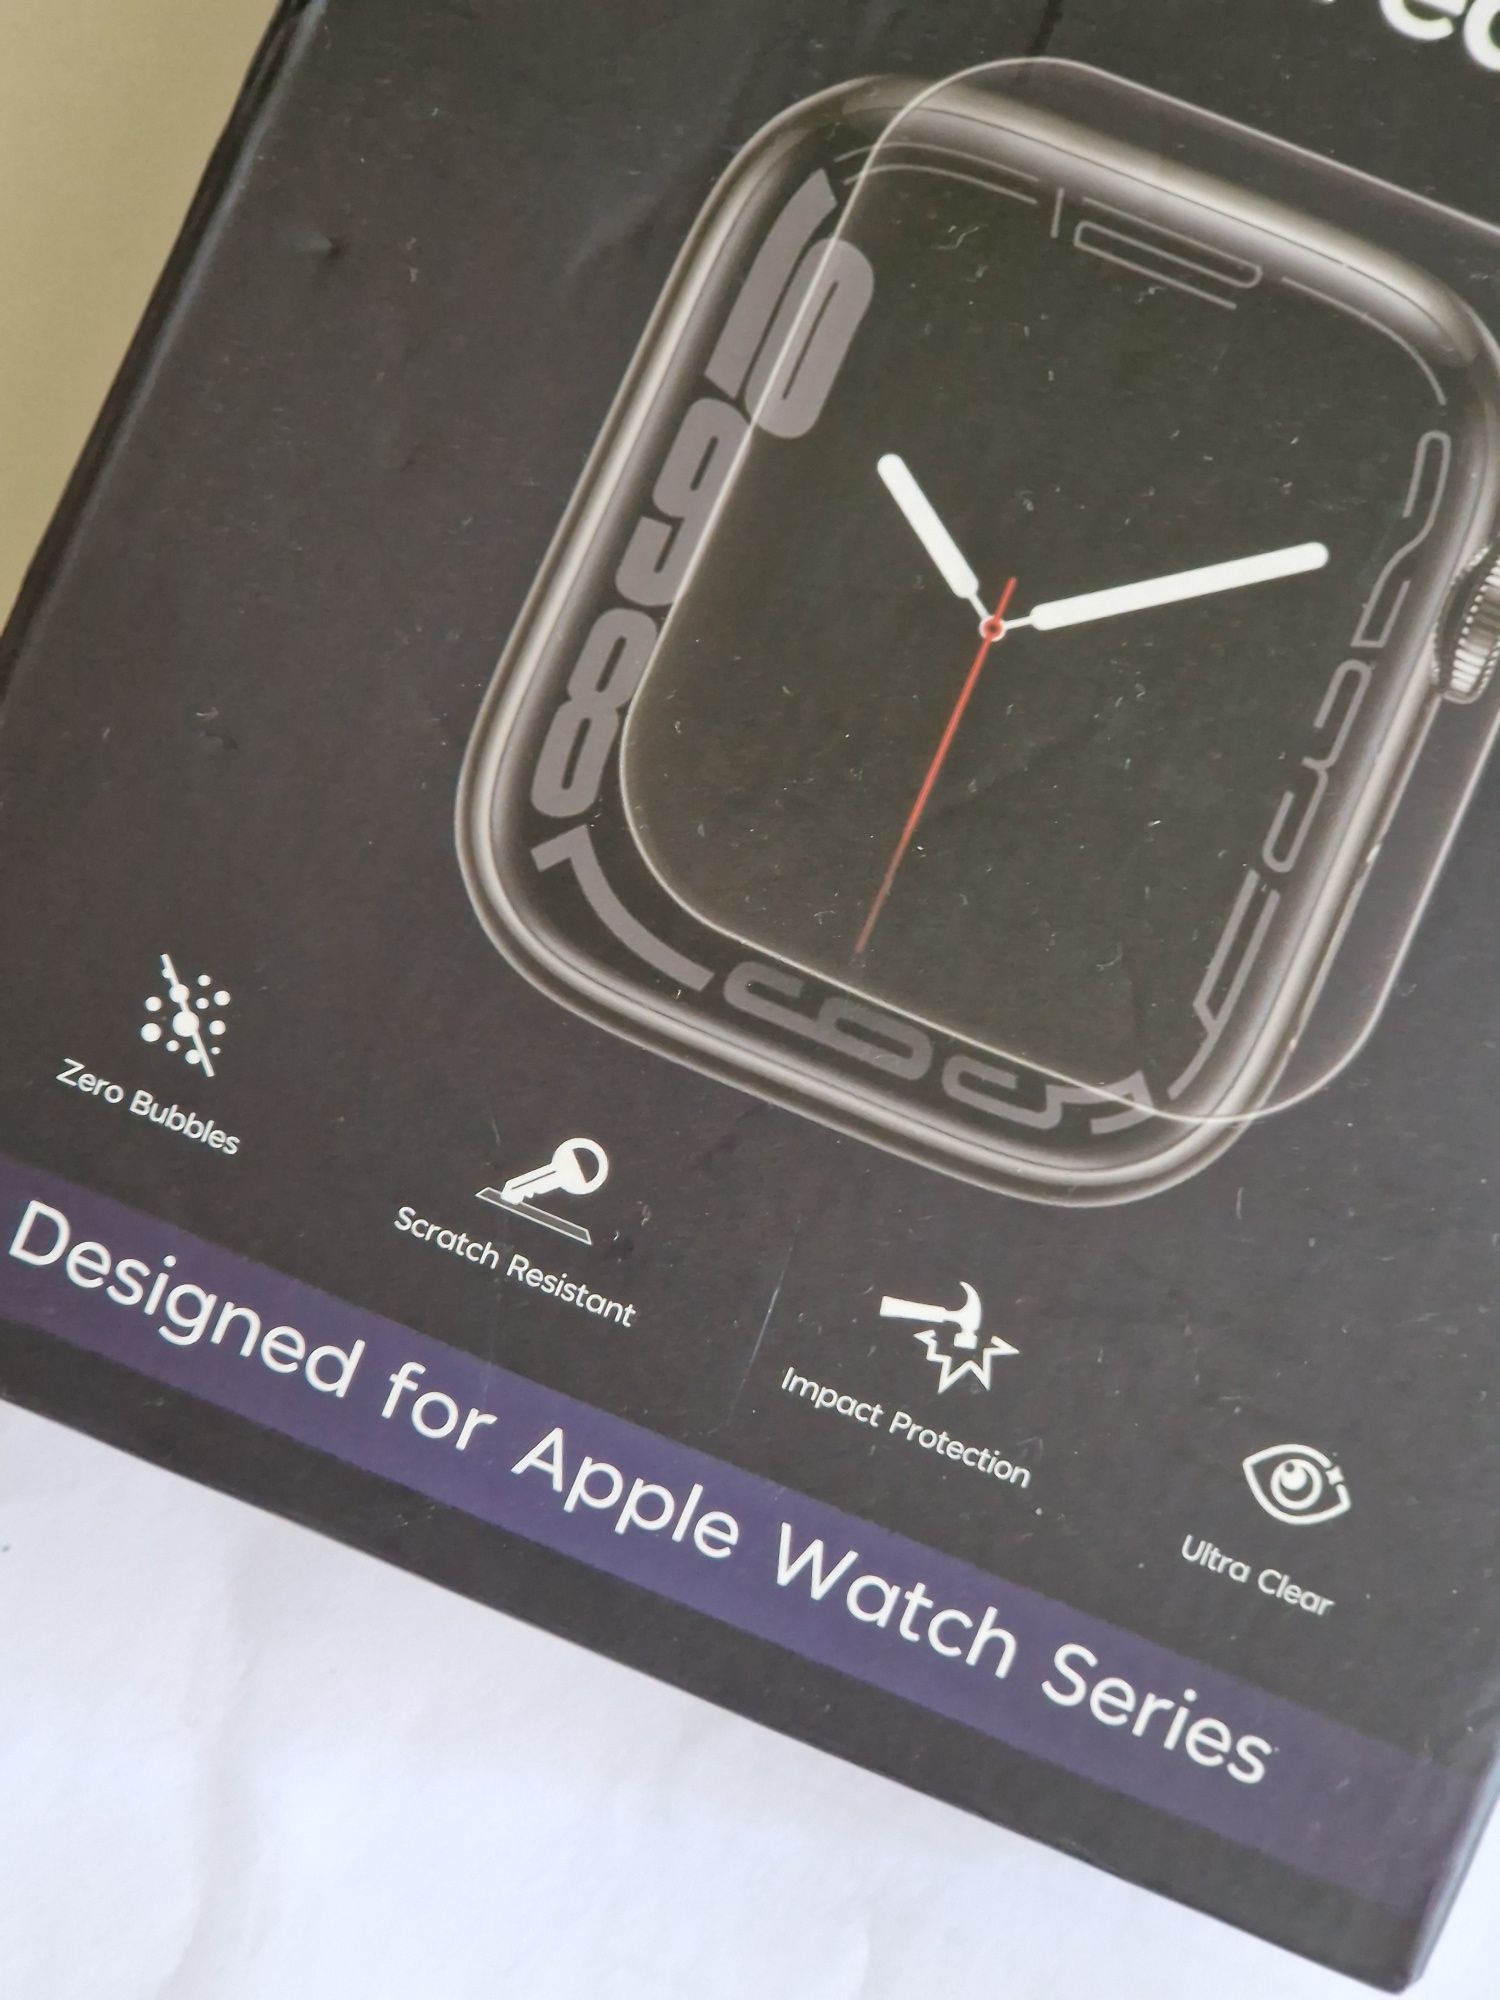 Szkło ochronne do smartwatch Apple 3 sztuki, nowe